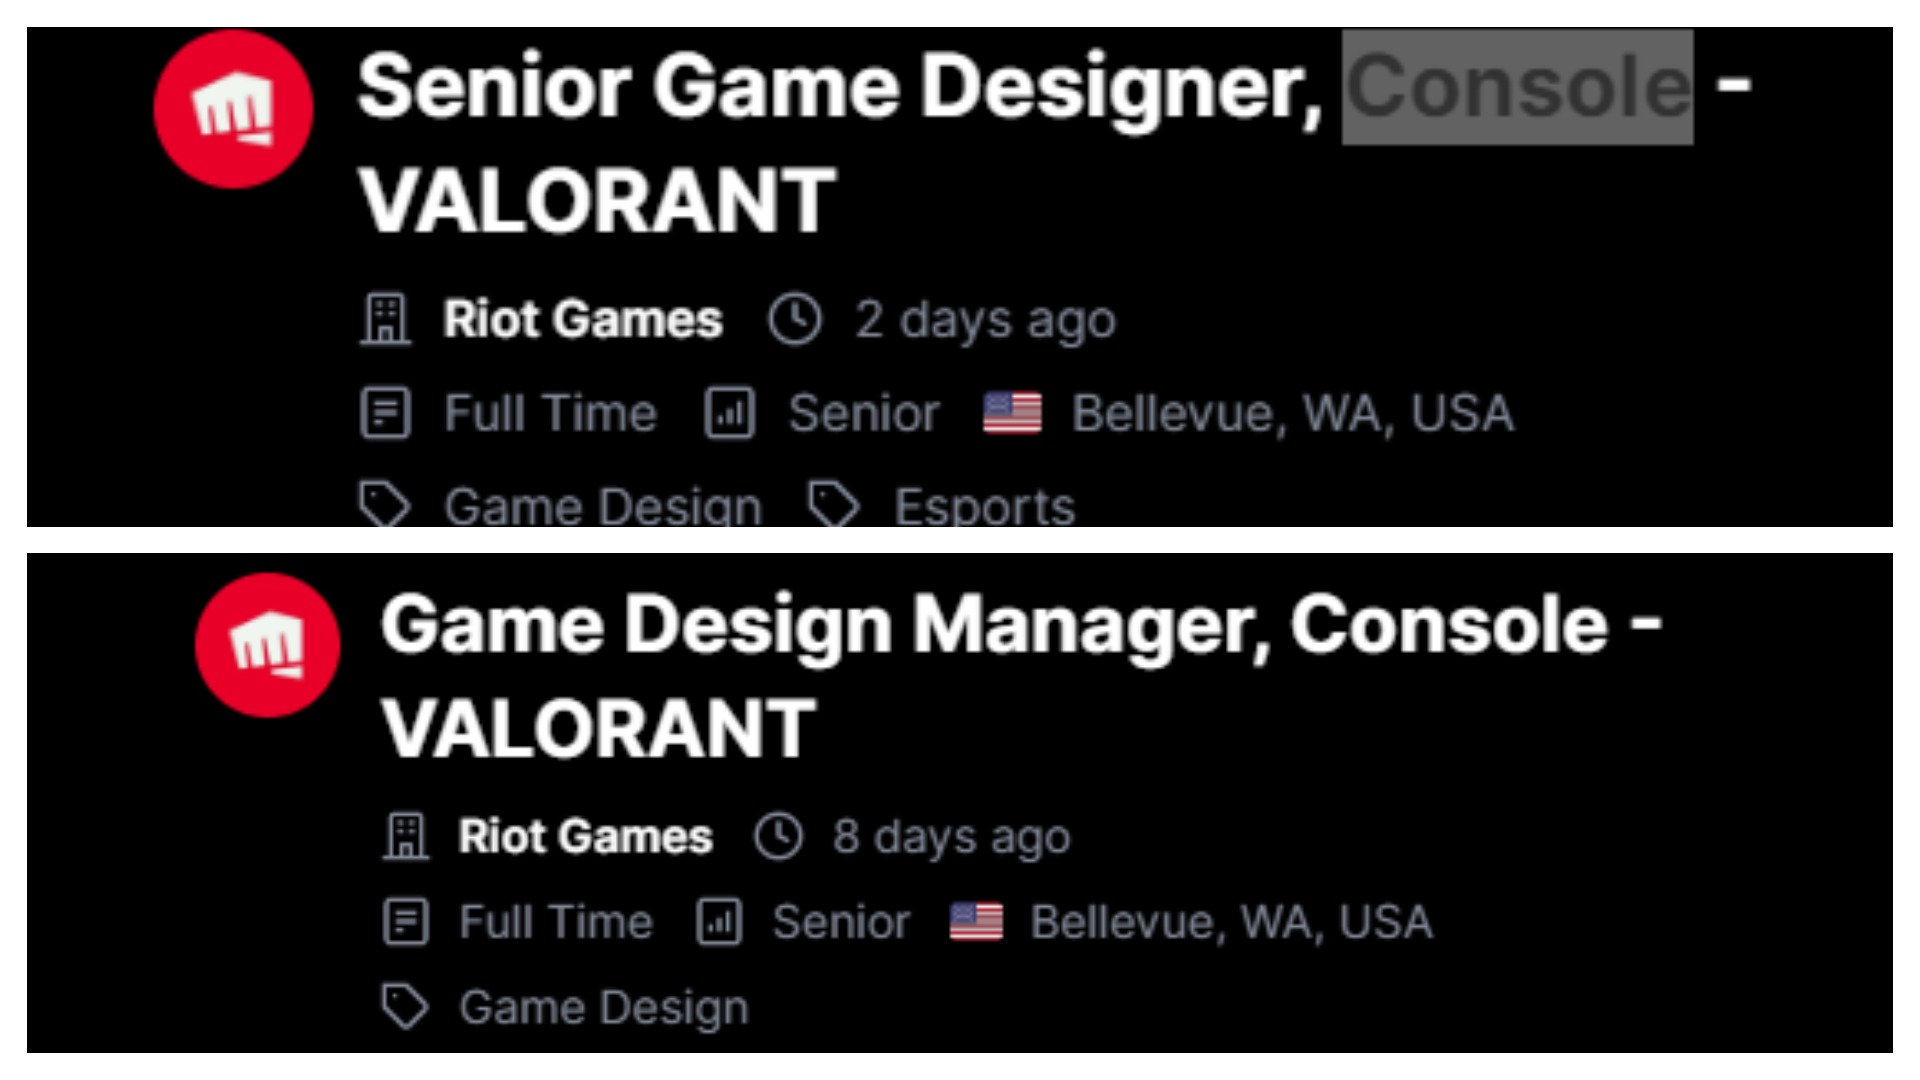 Colagem mostra duas vagas de emprego que mencionam uma portabilidade de Valorant para os consoles